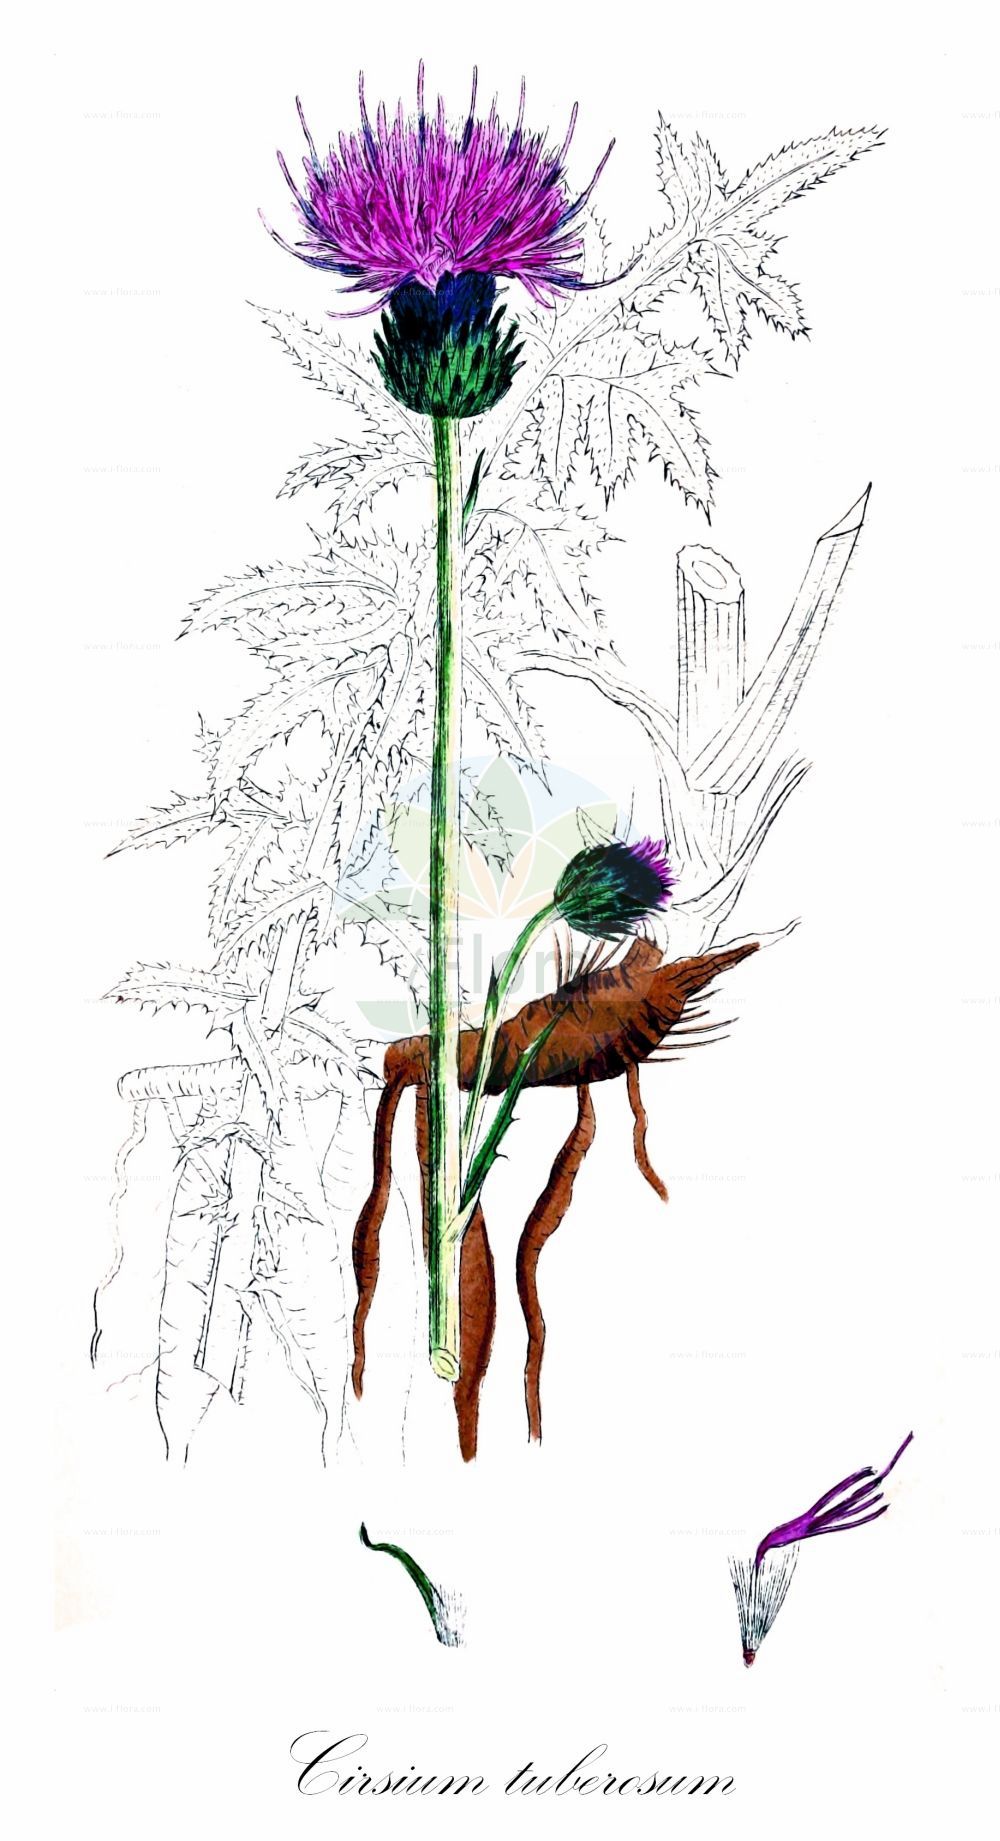 Historische Abbildung von Cirsium tuberosum (Knollige Kratzdistel - Tuberous Thistle). Das Bild zeigt Blatt, Bluete, Frucht und Same. ---- Historical Drawing of Cirsium tuberosum (Knollige Kratzdistel - Tuberous Thistle). The image is showing leaf, flower, fruit and seed.(Cirsium tuberosum,Knollige Kratzdistel,Tuberous Thistle,Carduus bulbosus,Carduus tuberosus,Cirsium bulbosum,Cirsium tuberosum,Cnicus tuberosus,Knollige Kratzdistel,Tuberous Thistle,Cirsium,Kratzdistel,Thistle,Asteraceae,Korbblütengewächse,Daisy family,Blatt,Bluete,Frucht,Same,leaf,flower,fruit,seed,Sowerby (1790-1813))